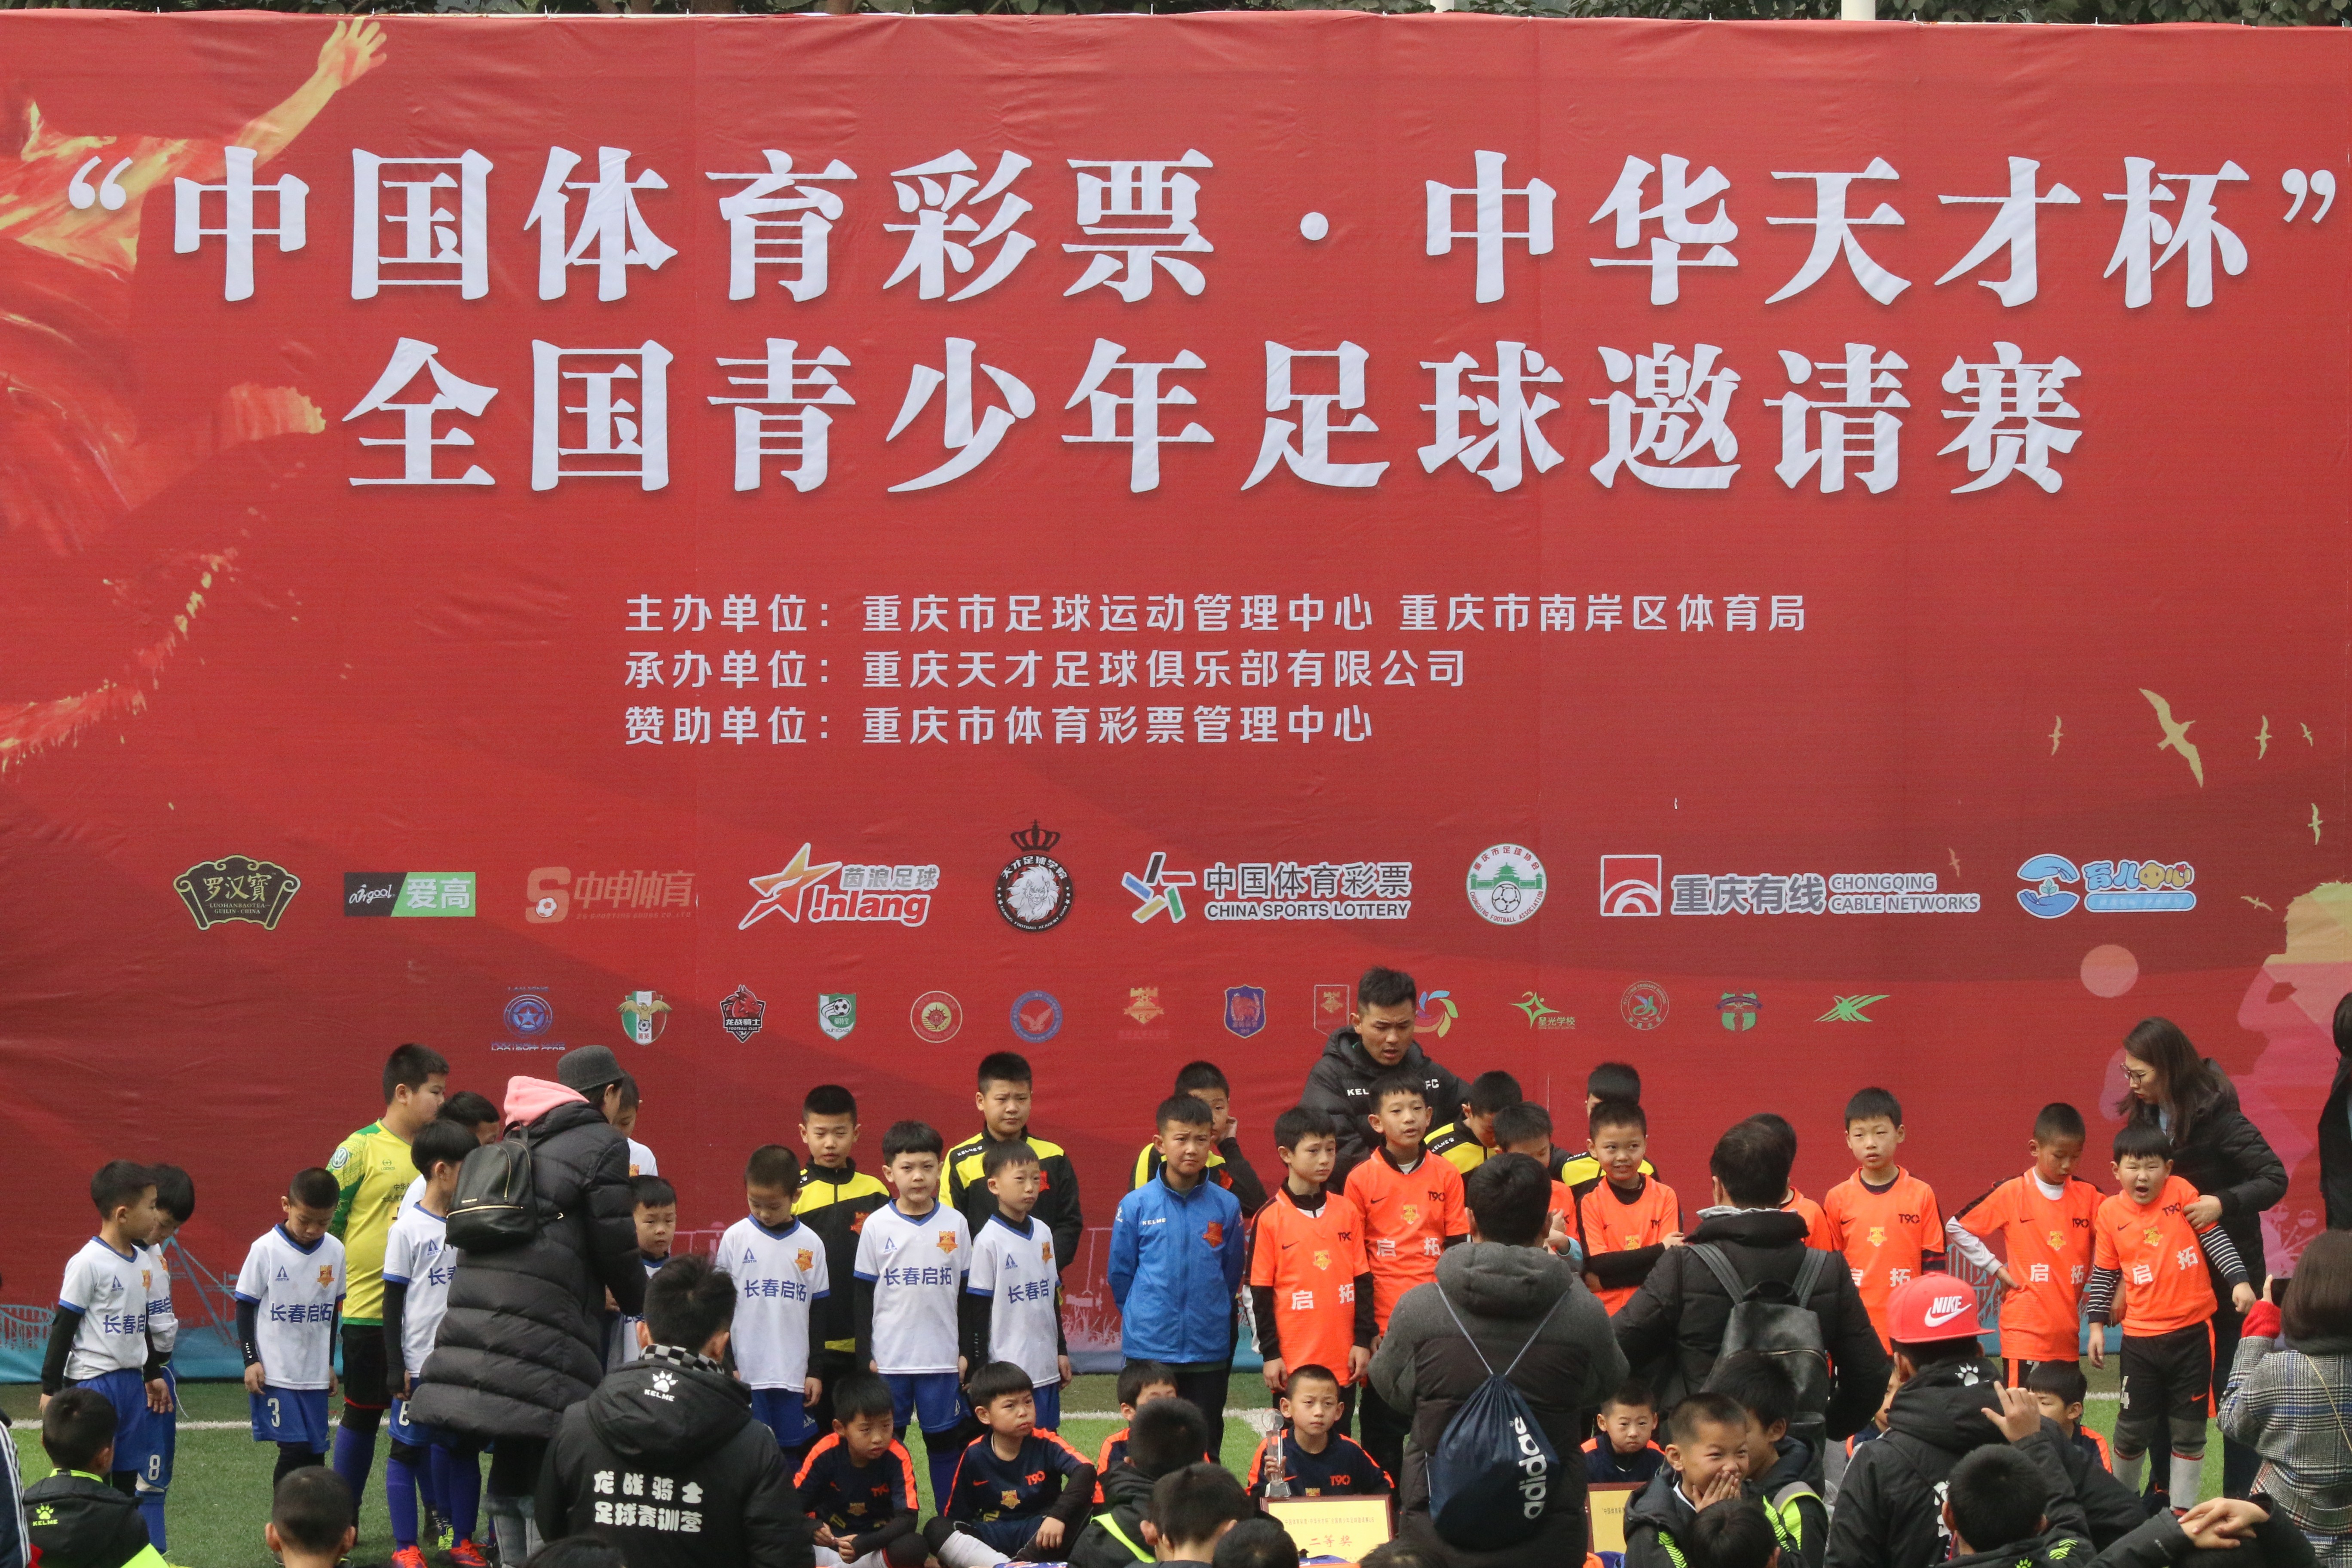 斯威2亿冠名重庆当代力帆 开启重庆足球新时代